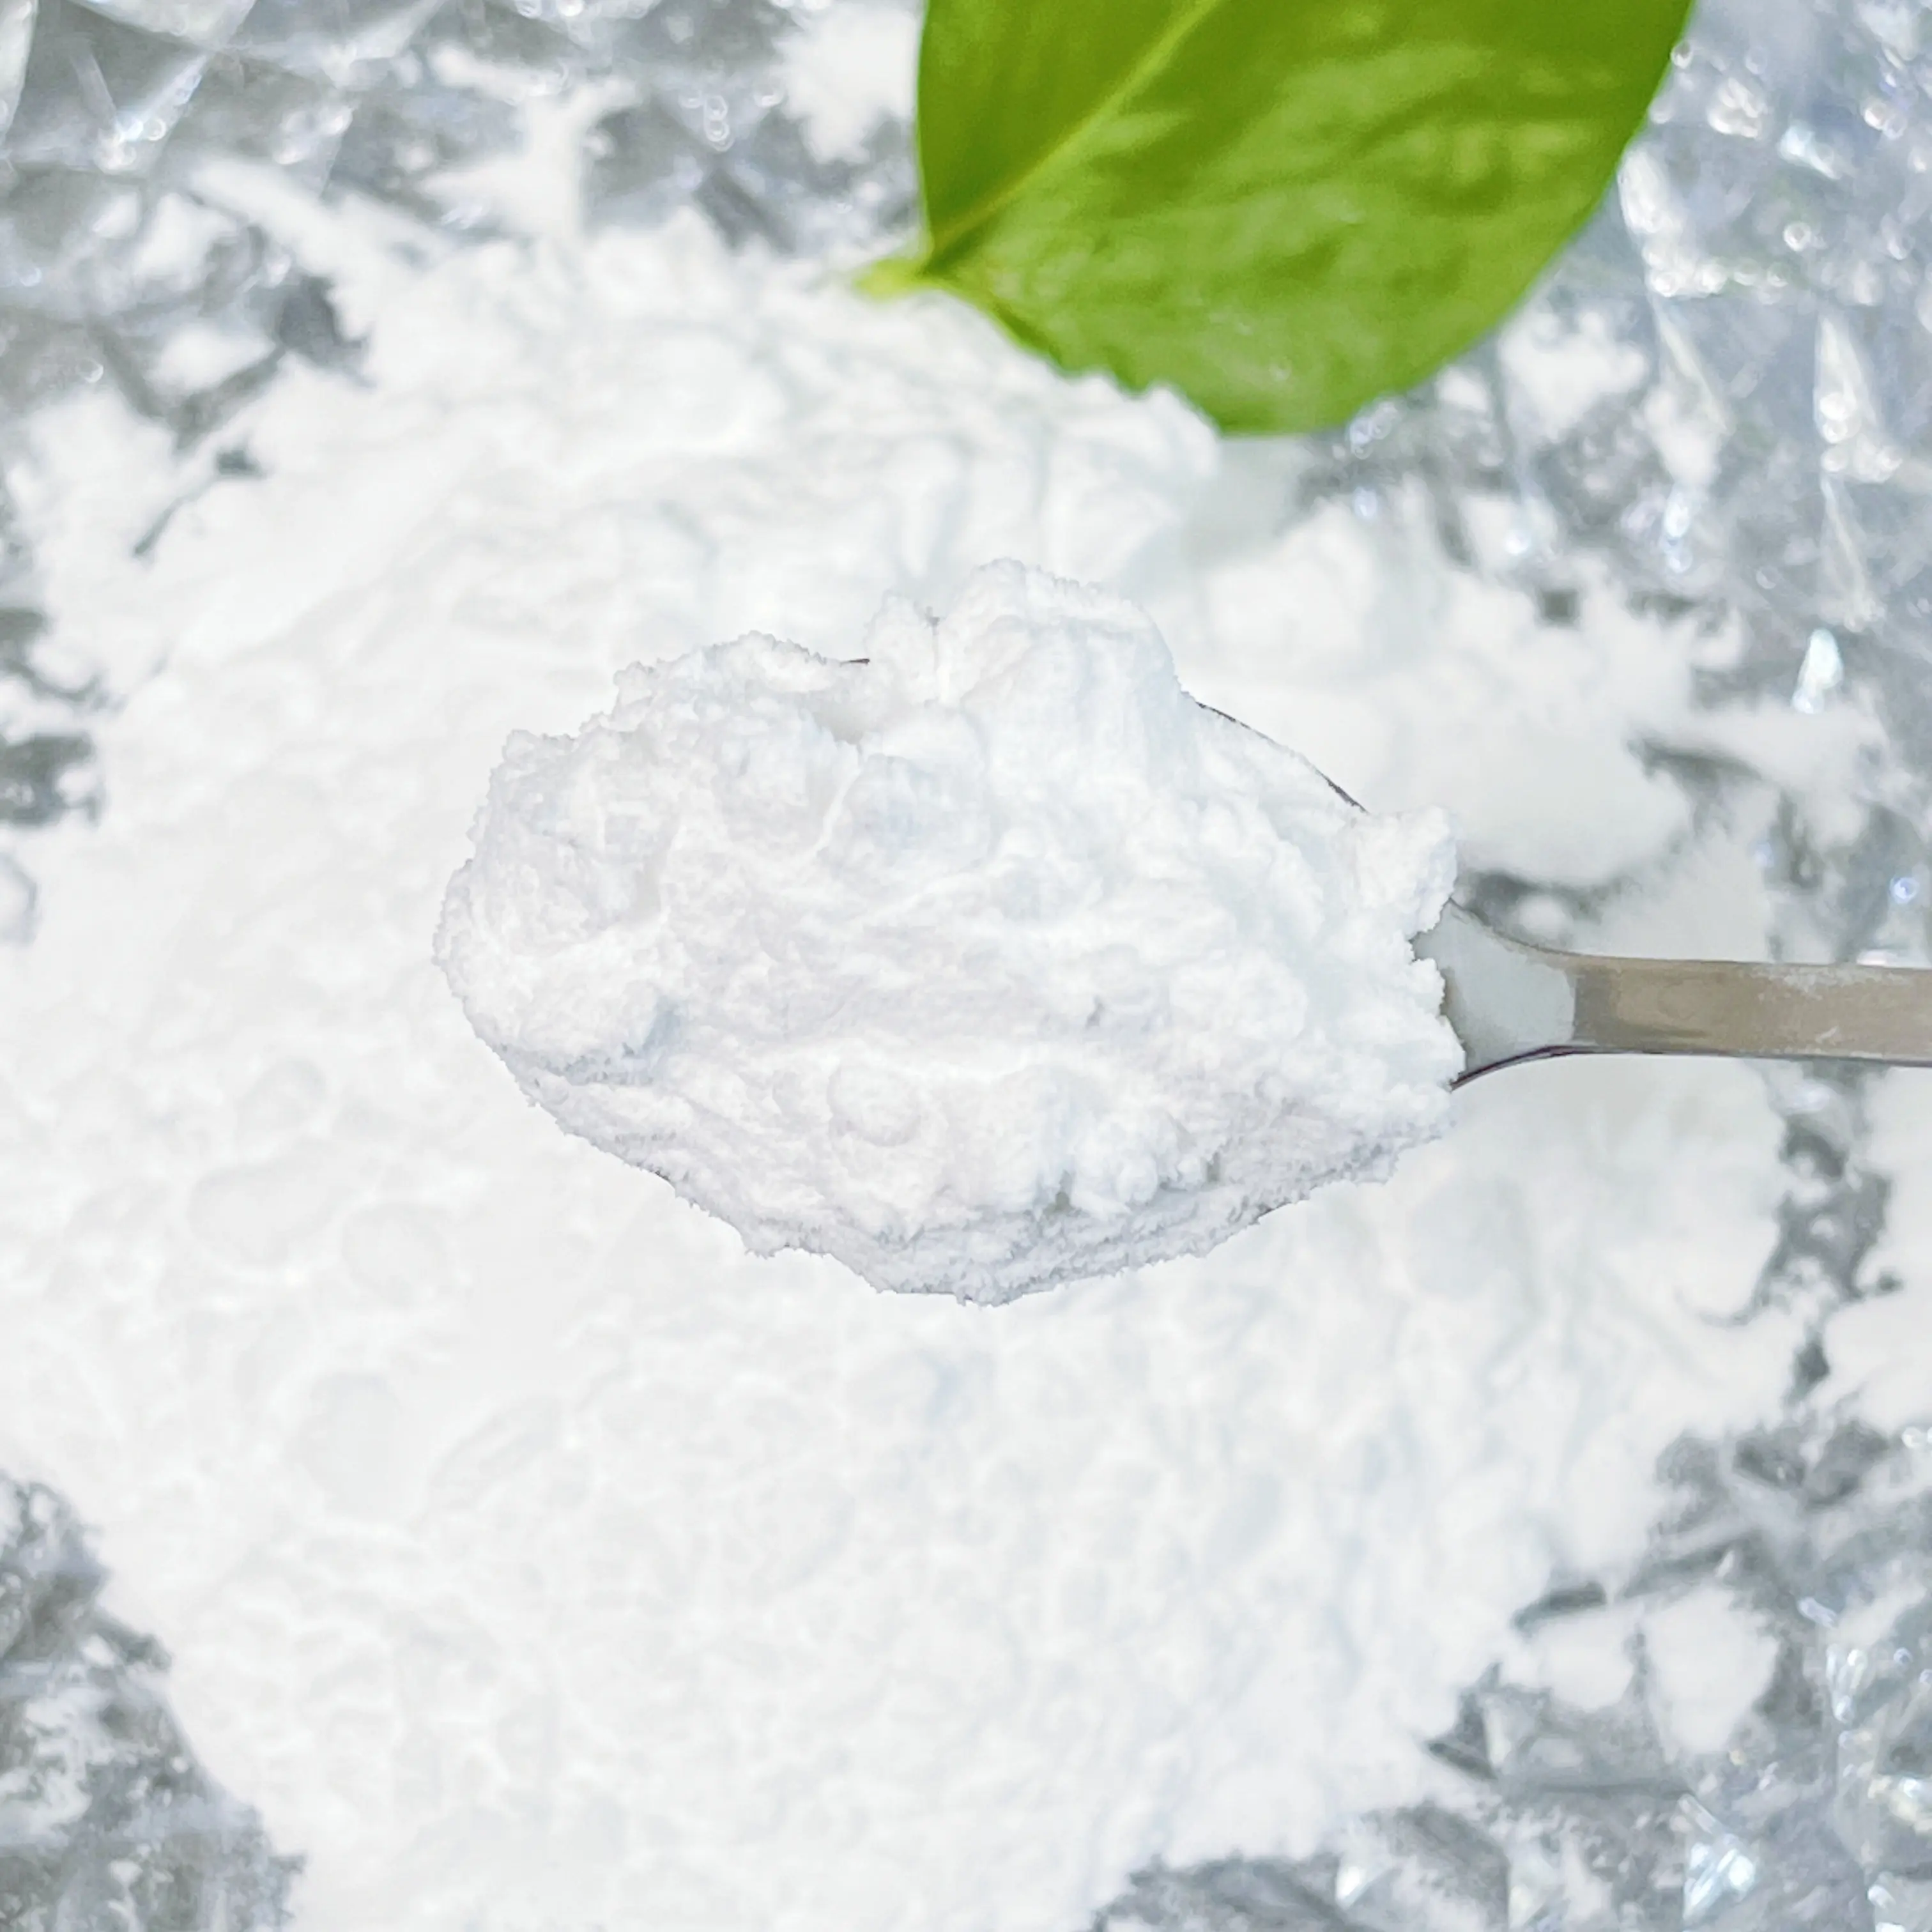 CAS 108 poudre blanche cristalline industrielle pure 25kg de la mélamine 99.8% en sac prix d'usine professionnel de ventes d'usine d'amine